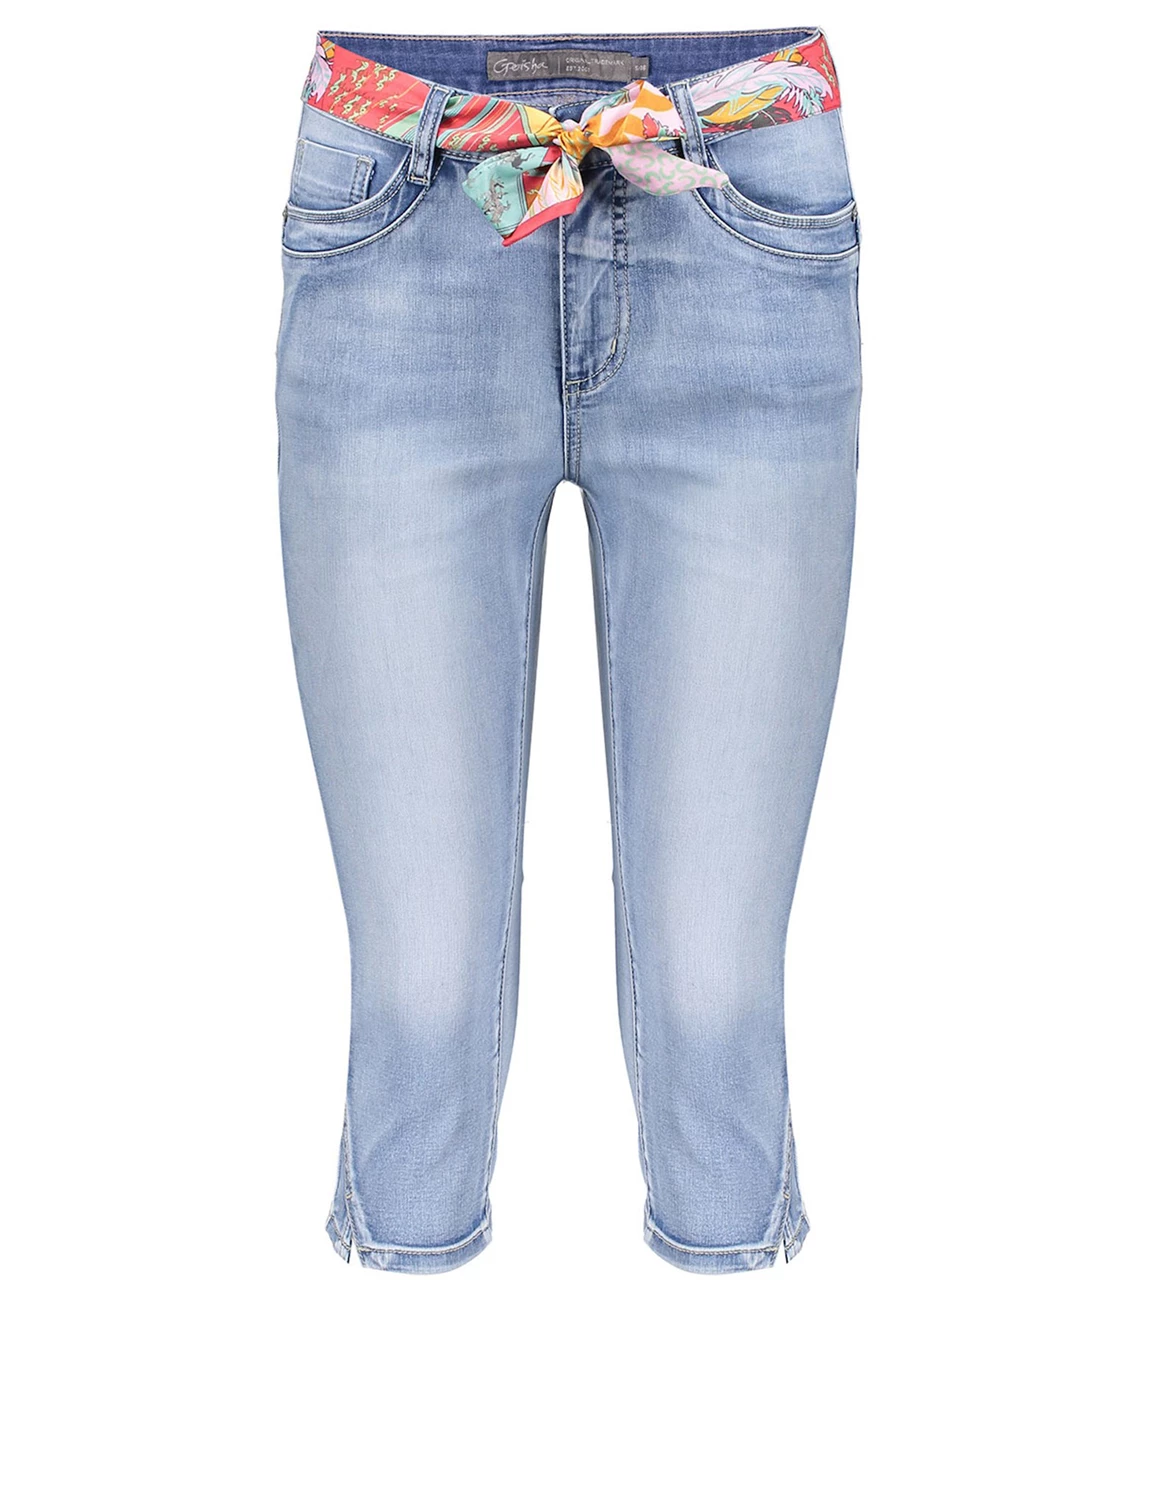 Twinkelen overschot Versnipperd Geisha Jeans capri + belt 31003-10 licht blauw kopen bij The Stone